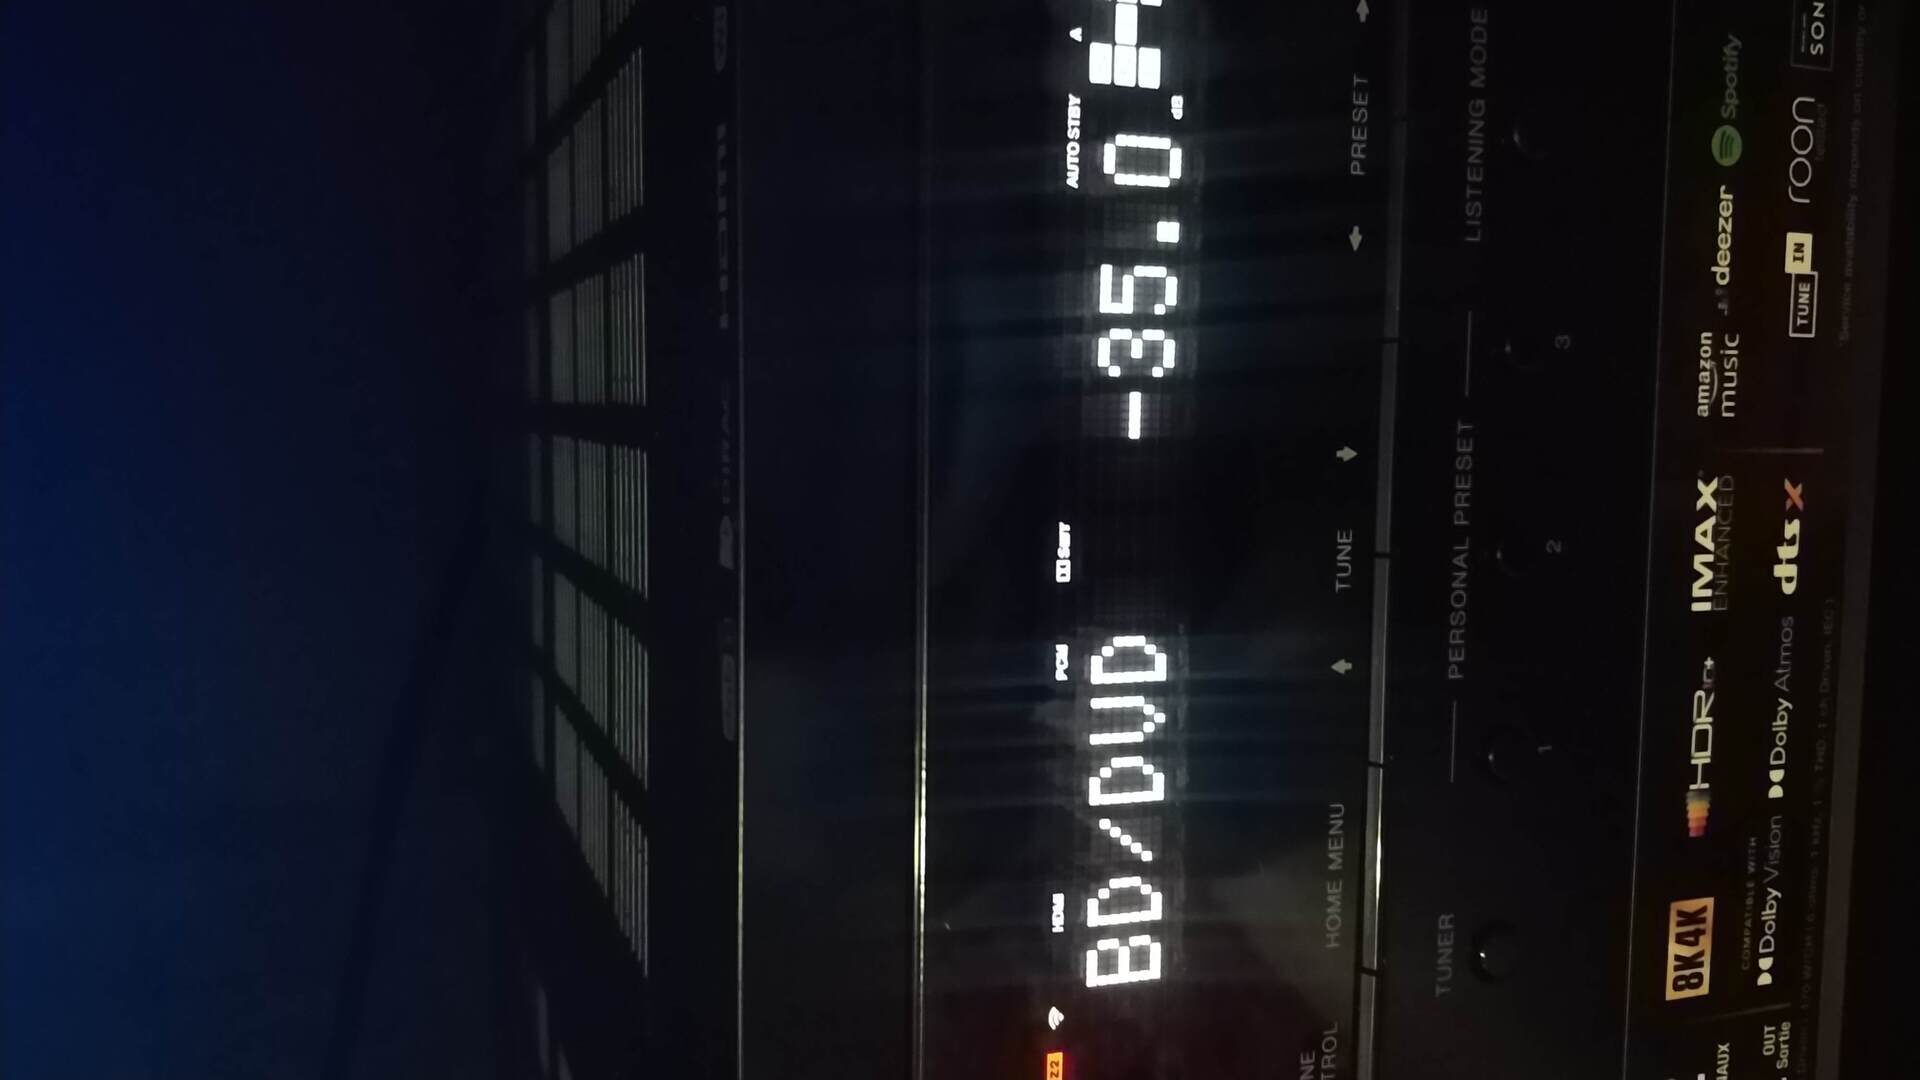 Горит на дисплее лифта надпись Fire. На экране появились наушники